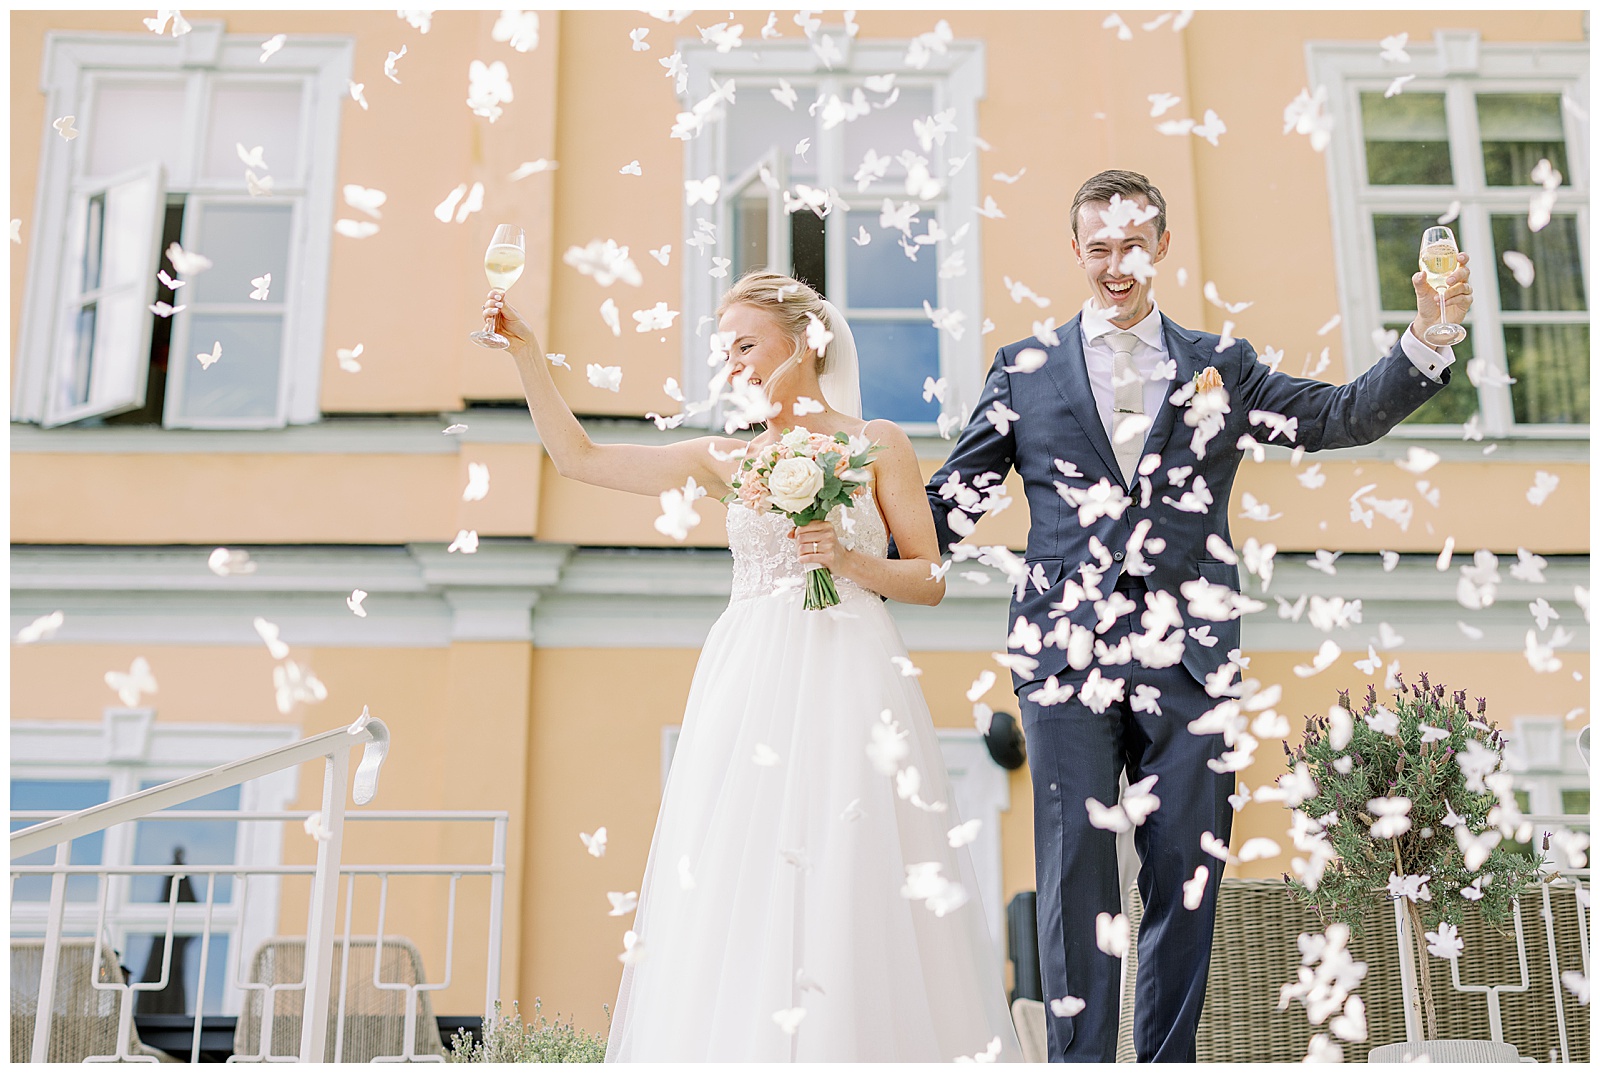 Gratulationer på bröllop på Thorersta herrgård